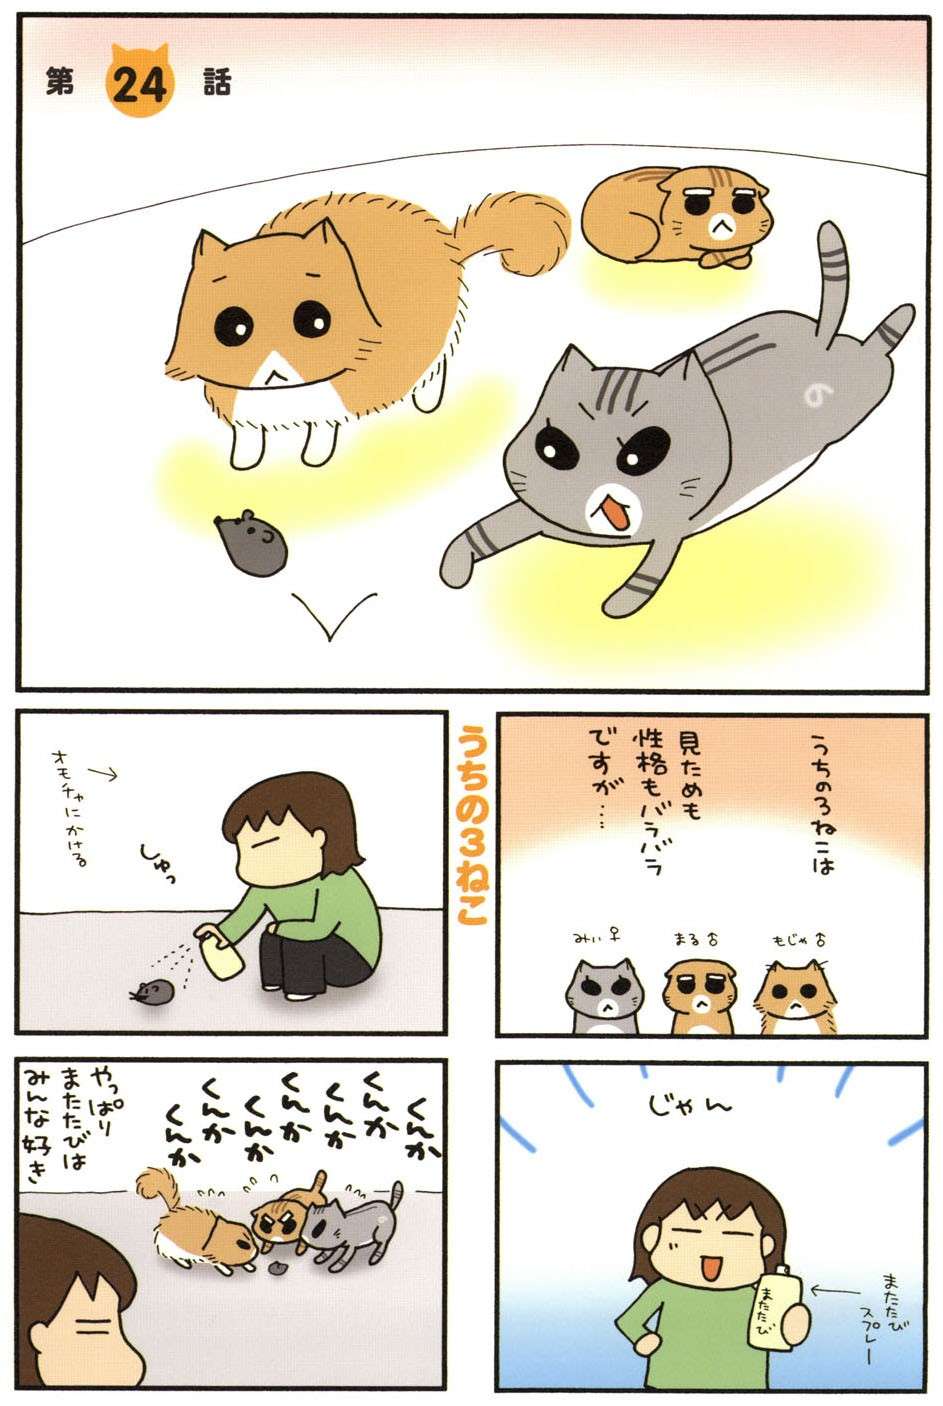 性格は違っても、猫はみんなまたたびが大好き!?  またたびグッズを試してみたら／うちの3ねこ 2 uchinosanneko_002_005.jpg